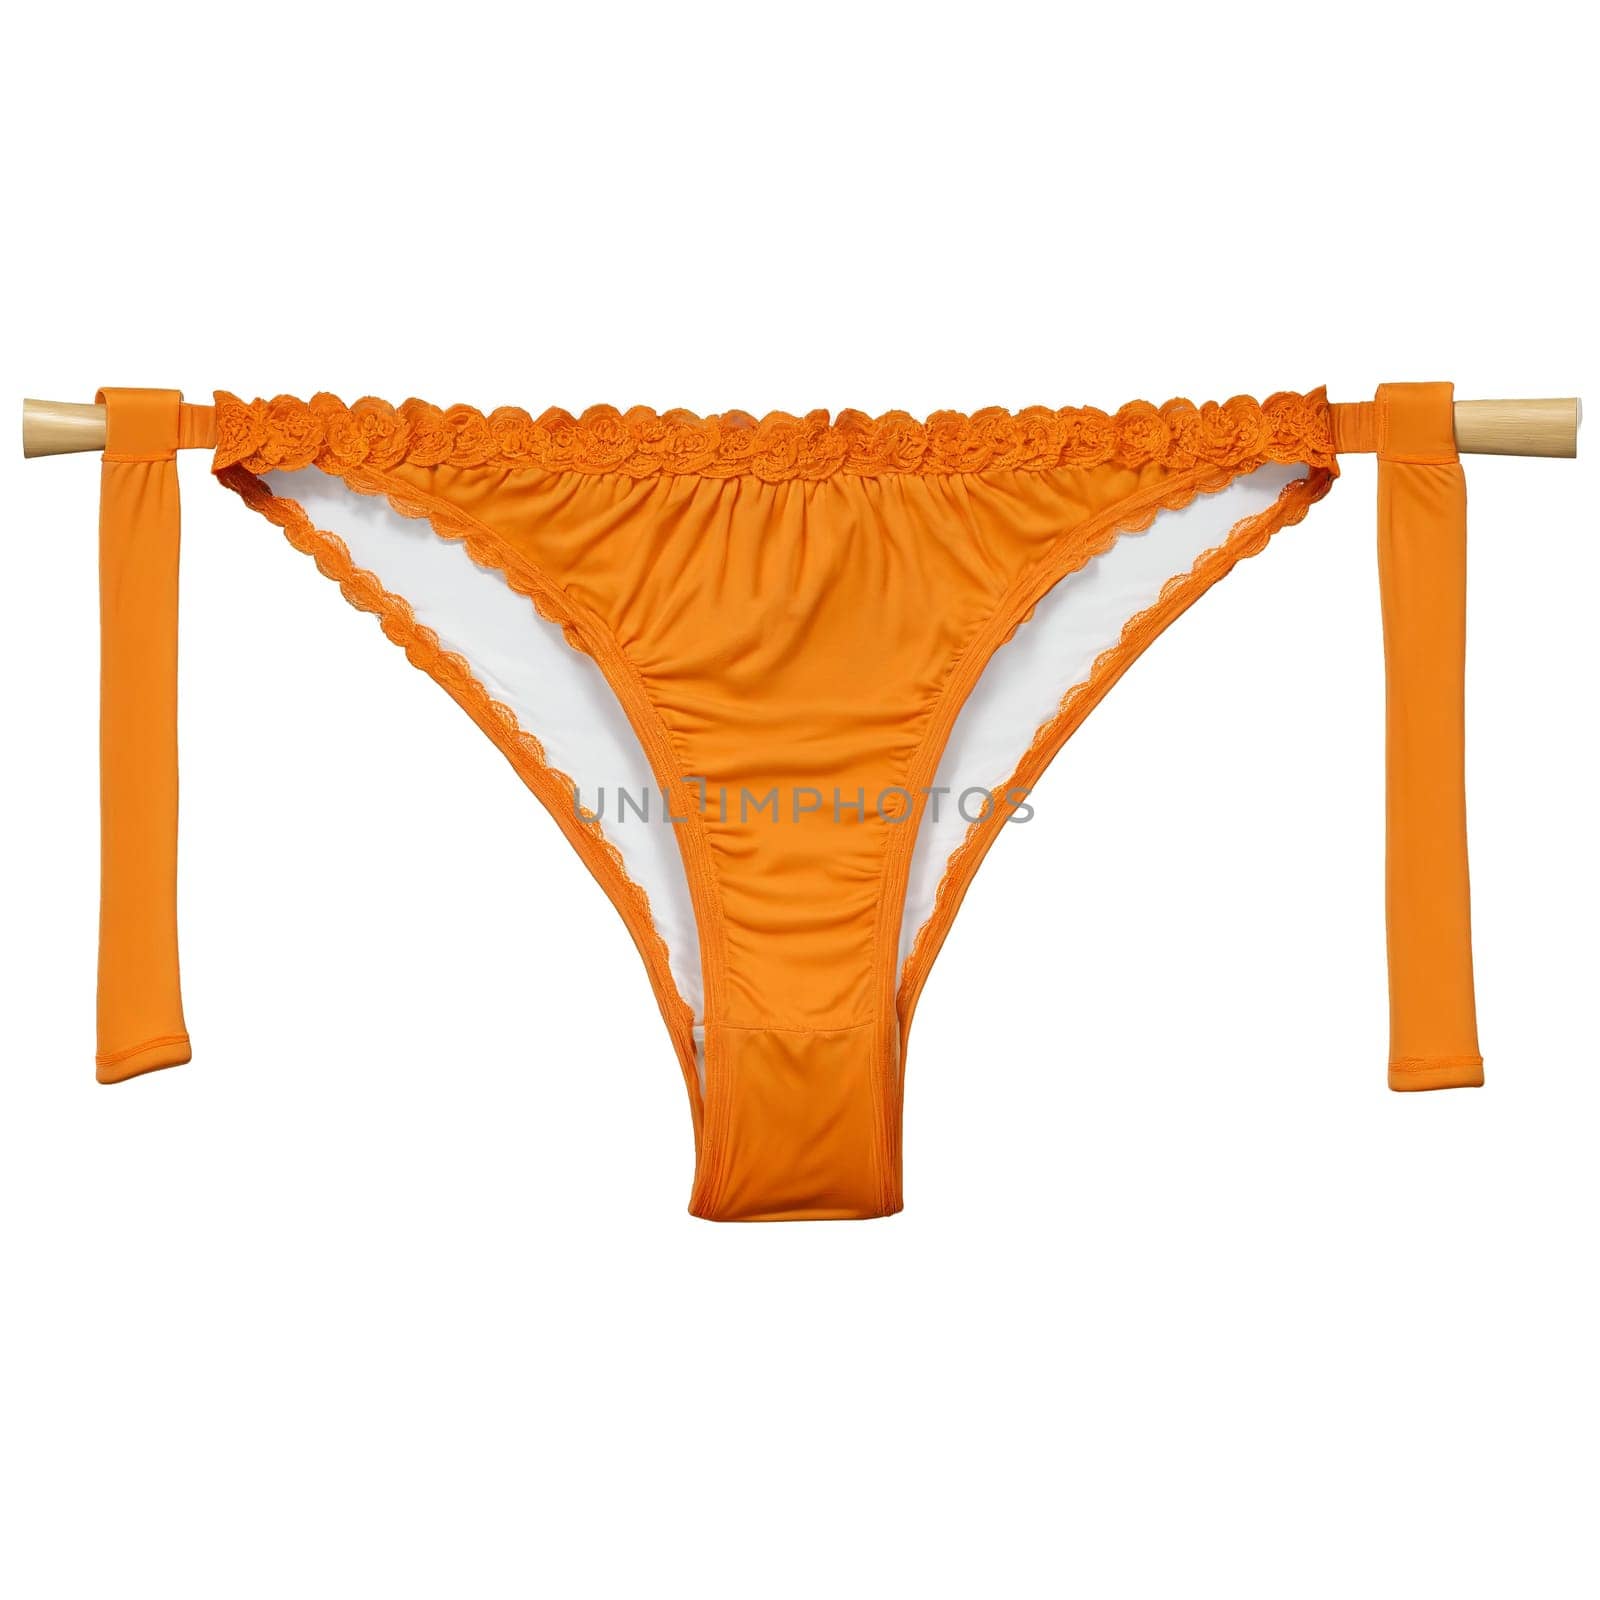 Orange Cotton Underwear A pair of orange cotton women s underwear with a bold by panophotograph